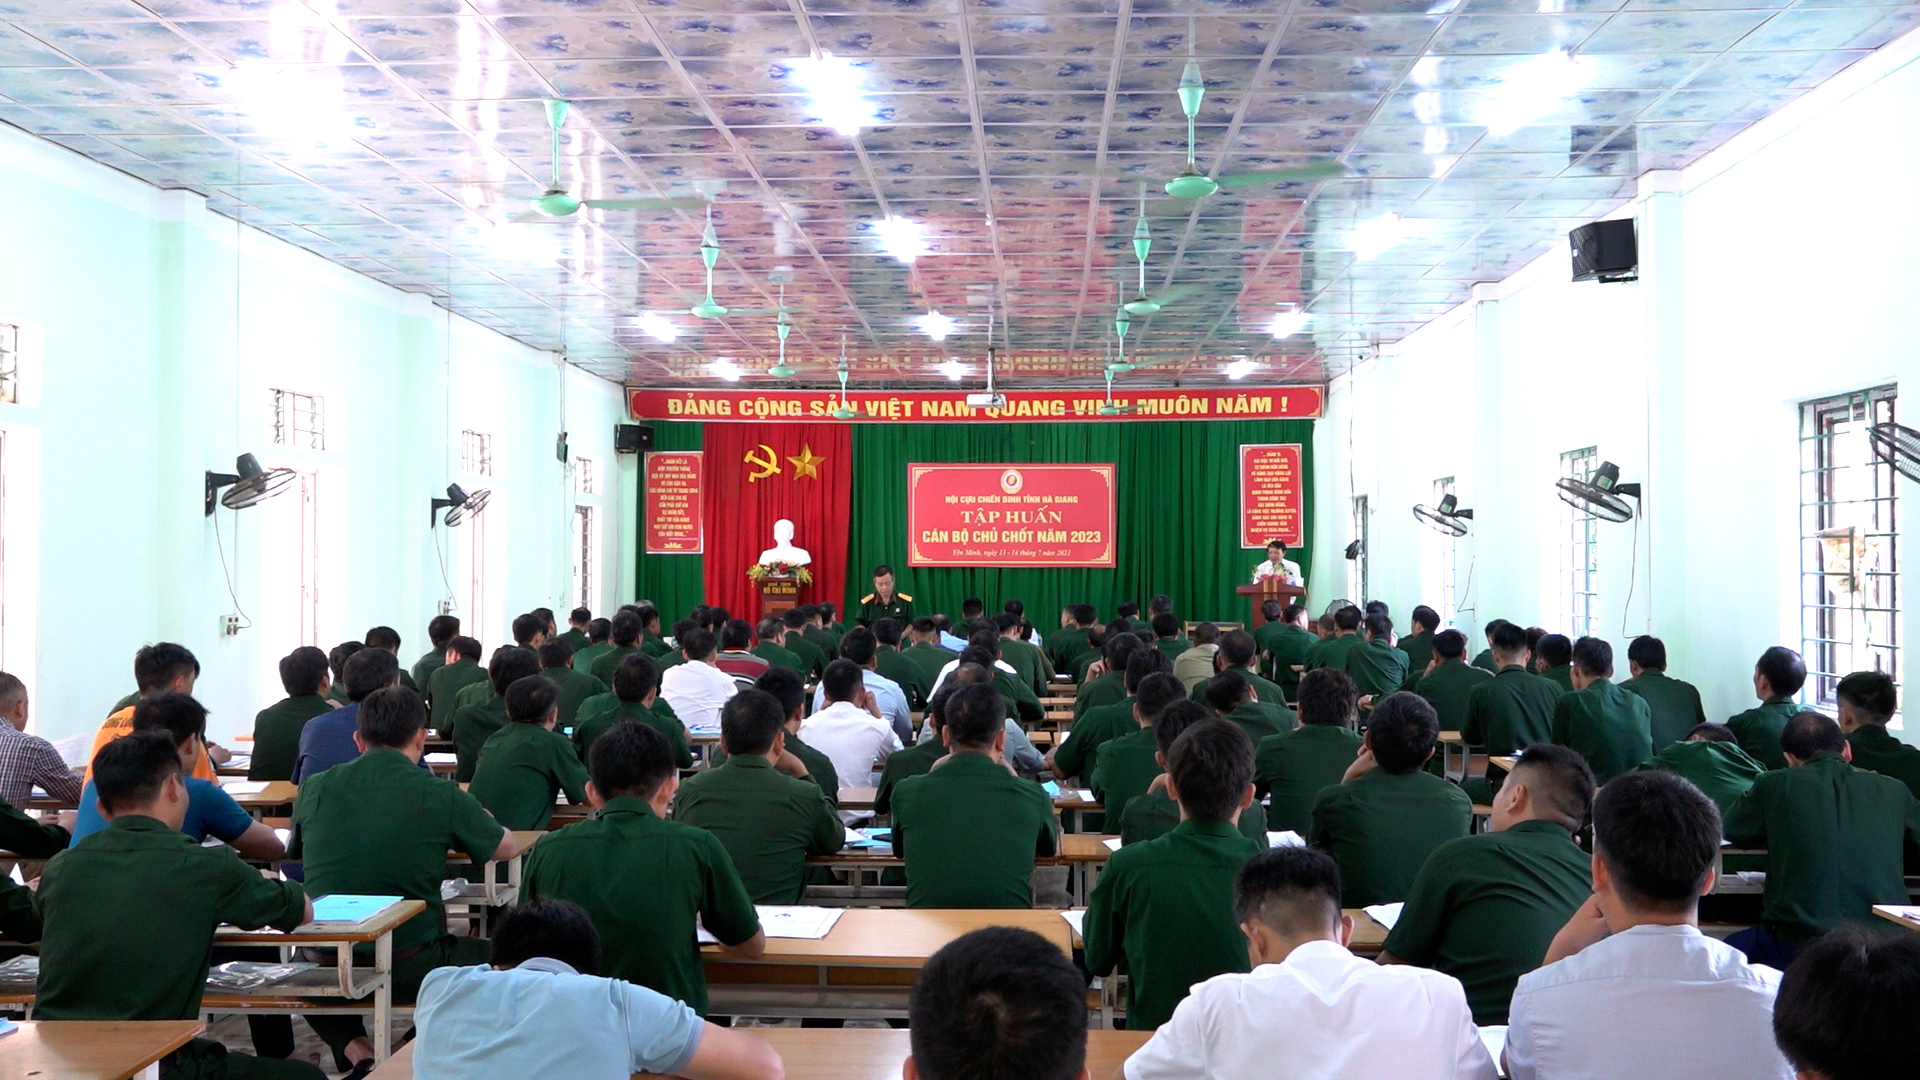 Hội Cựu chiến binh tỉnh tổ chức Hội nghị tập huấn cán bộ chủ chốt năm 2023 tại huyện Yên Minh